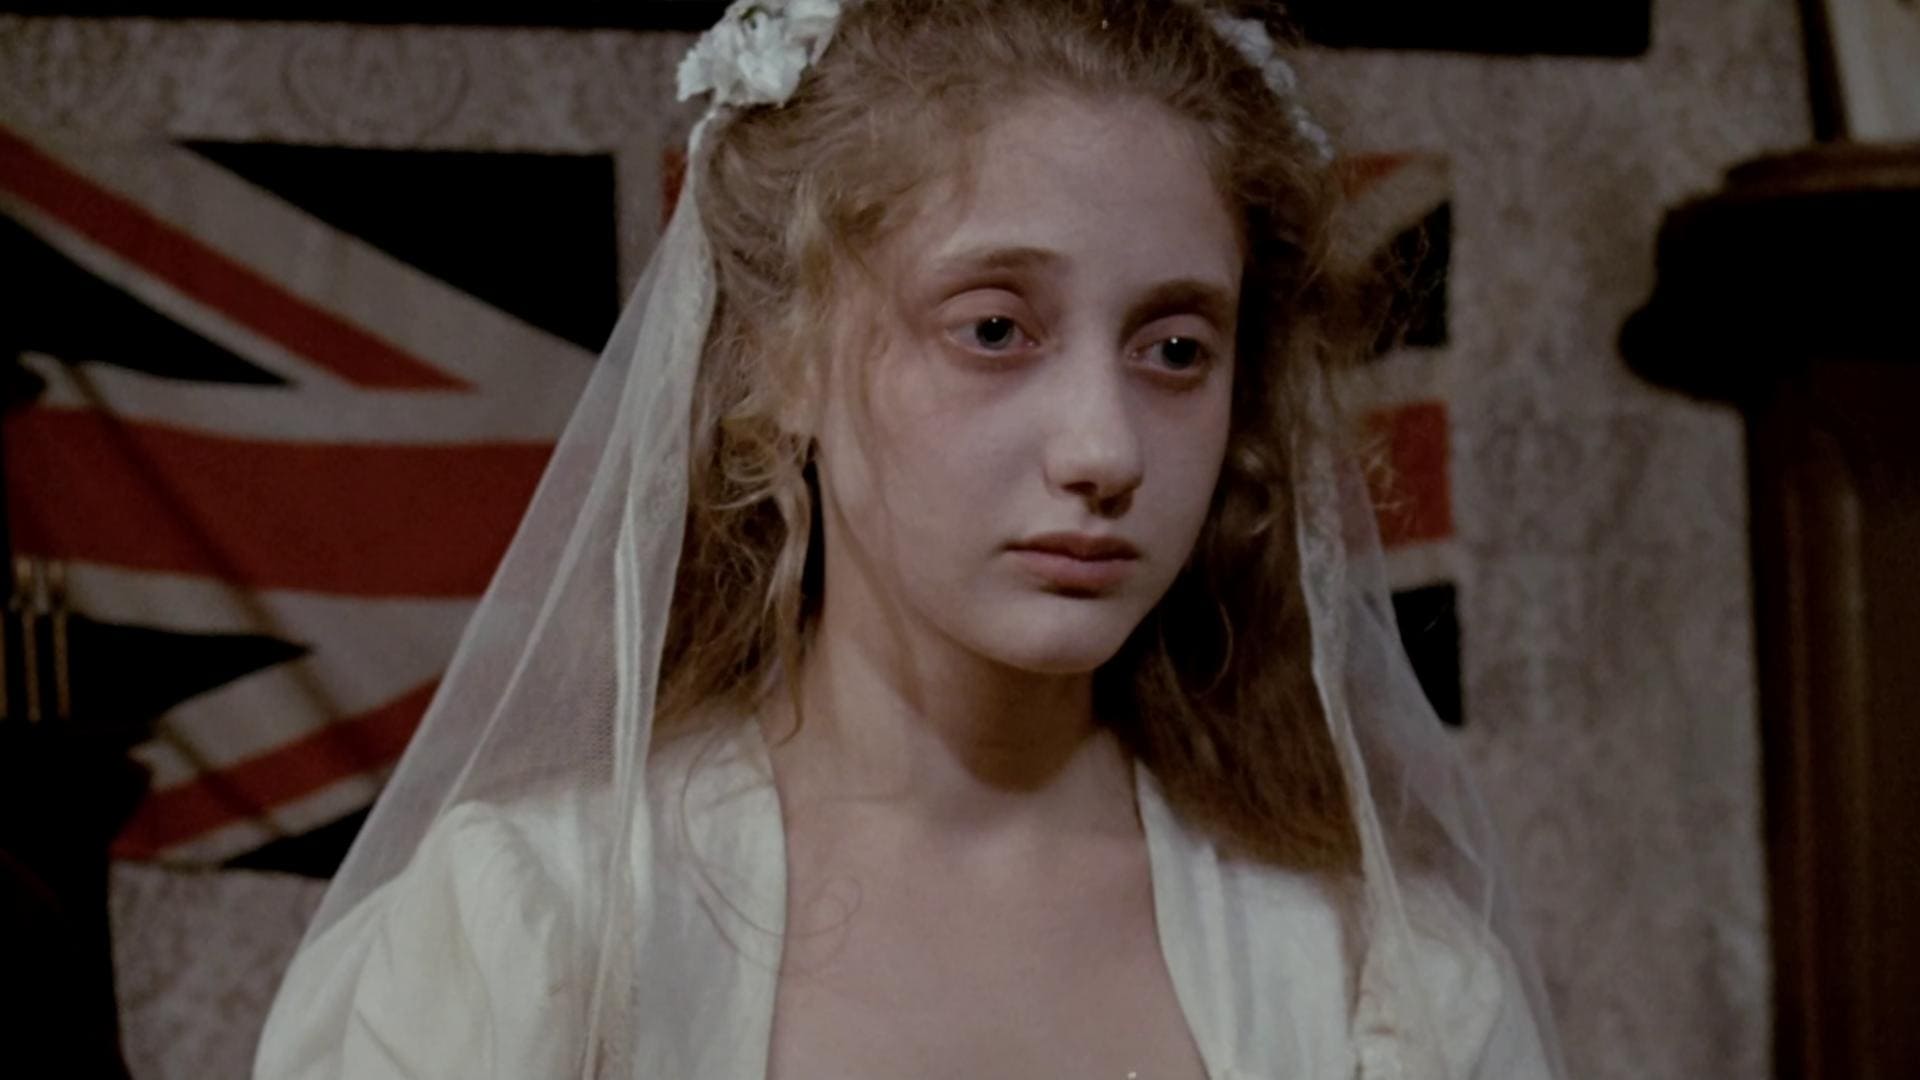 Wedding in White (1972)